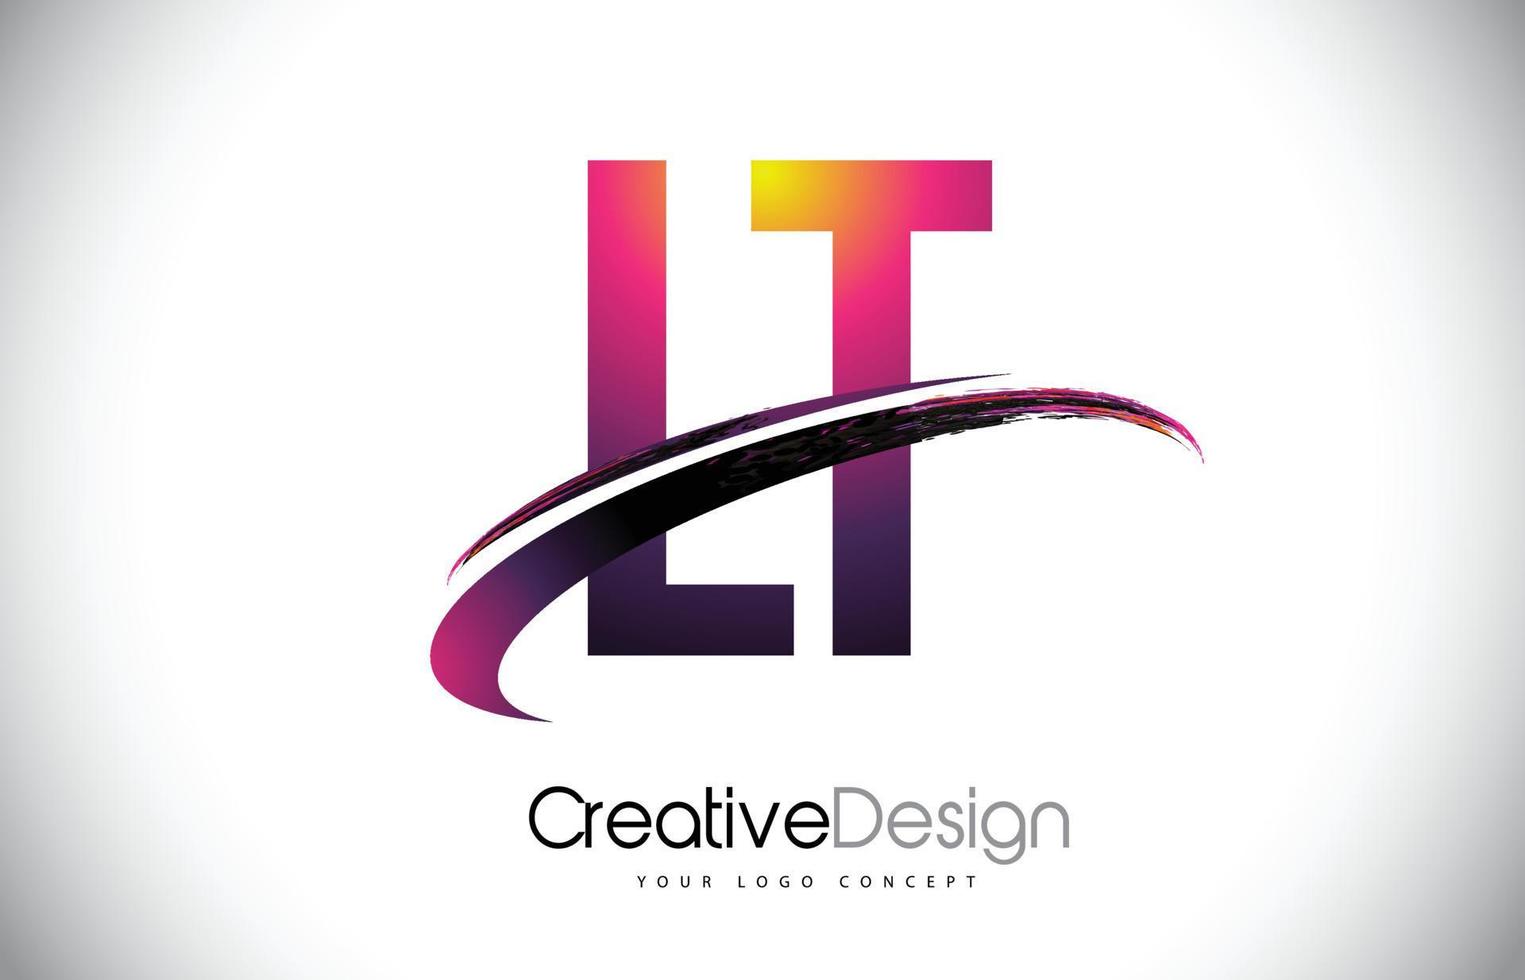 lt lt lila bokstavslogotyp med swoosh-design. kreativa magenta moderna bokstäver vektor logotyp.